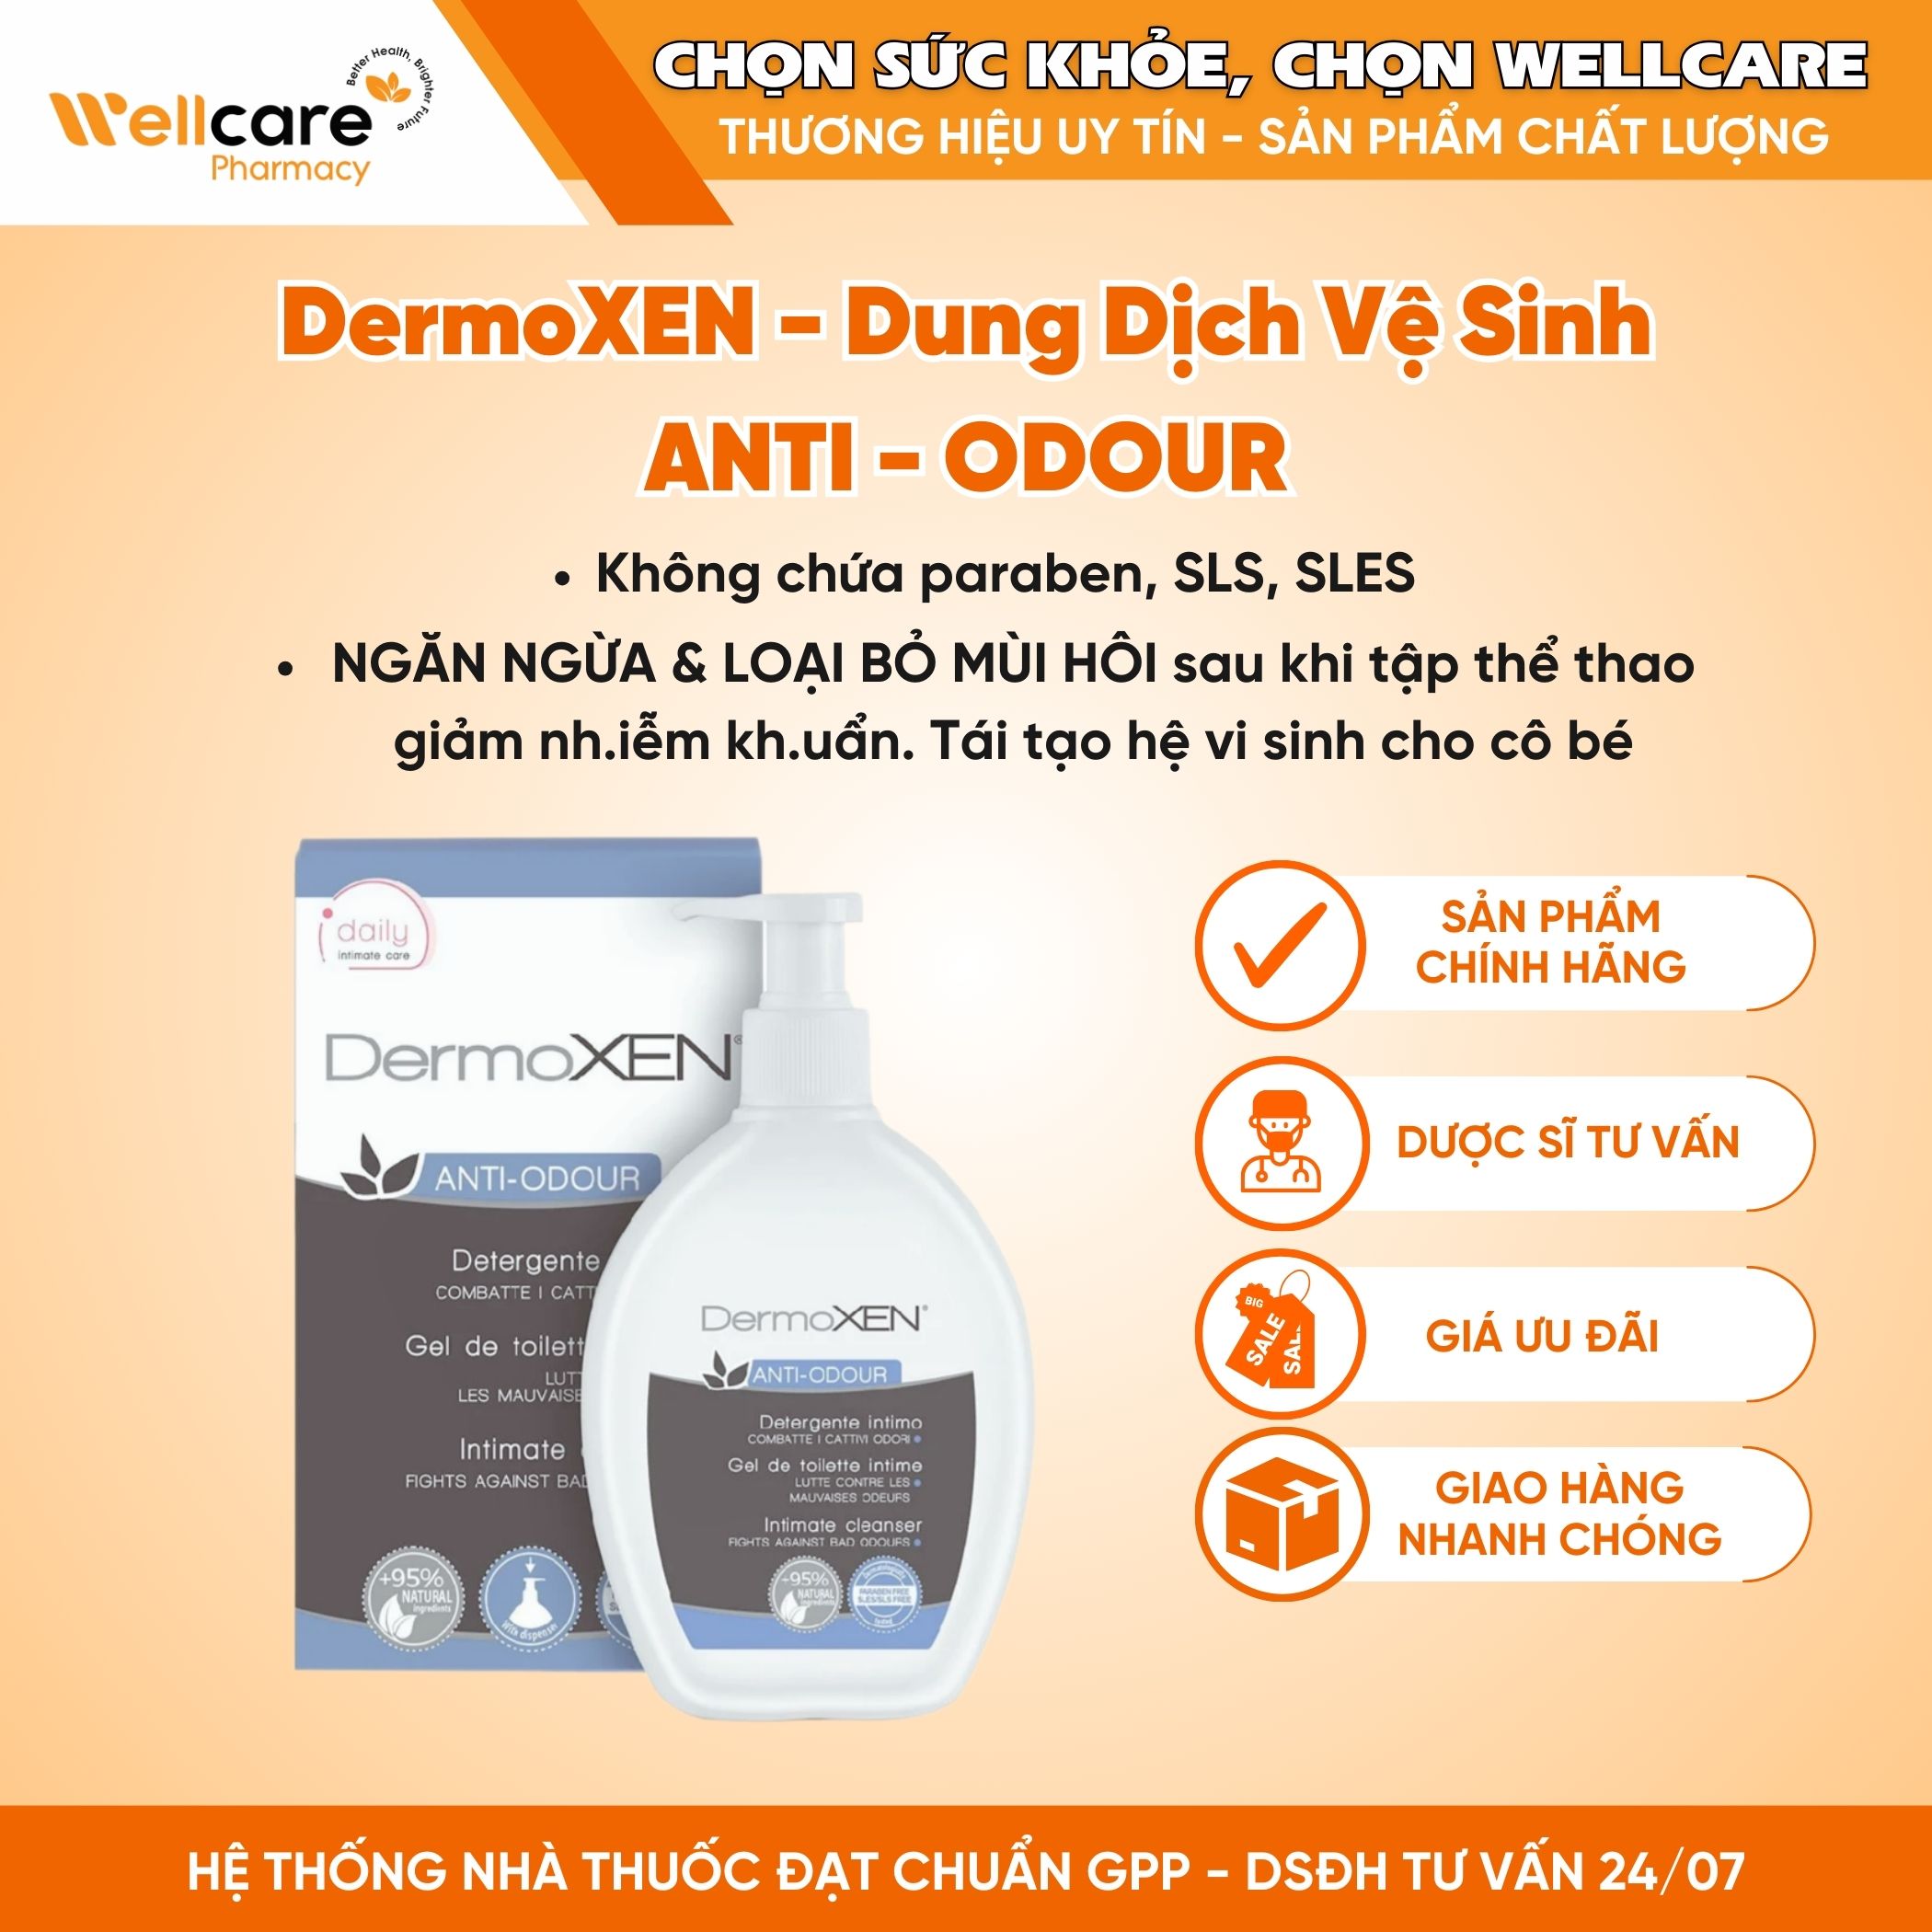 DermoXEN ANTI-ODOUR – Dung dịch vệ sinh cho phụ nữ, giảm mùi, triệu chứng khó chịu (Chai 200ml)